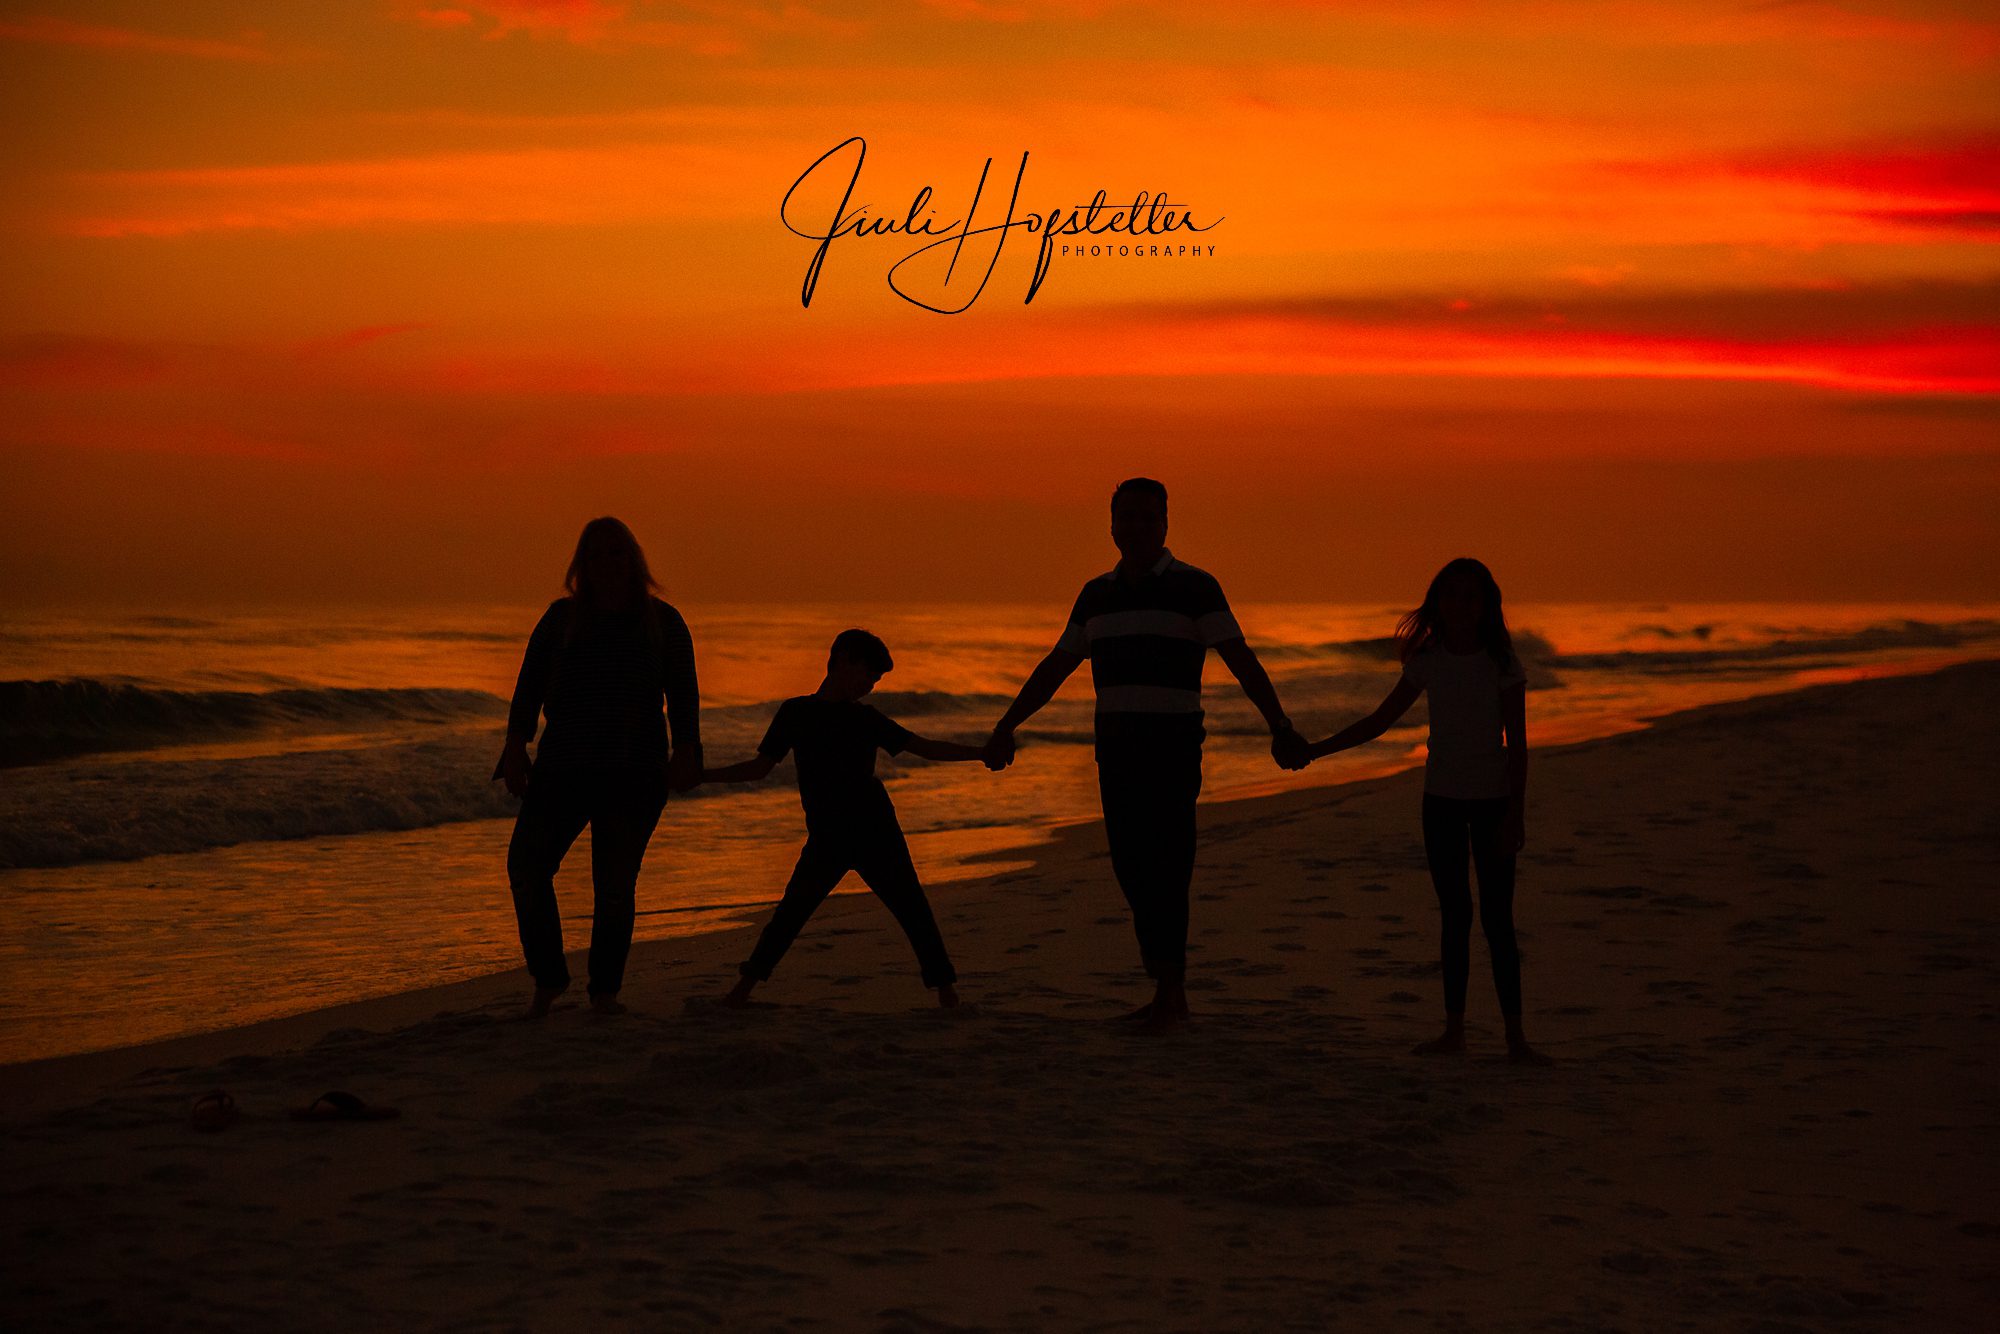 Pensacola Family Photographer Pensacola Beach Family Photographer Pensacola Beach Photographer Family Photographer Pensacola Family Pictures